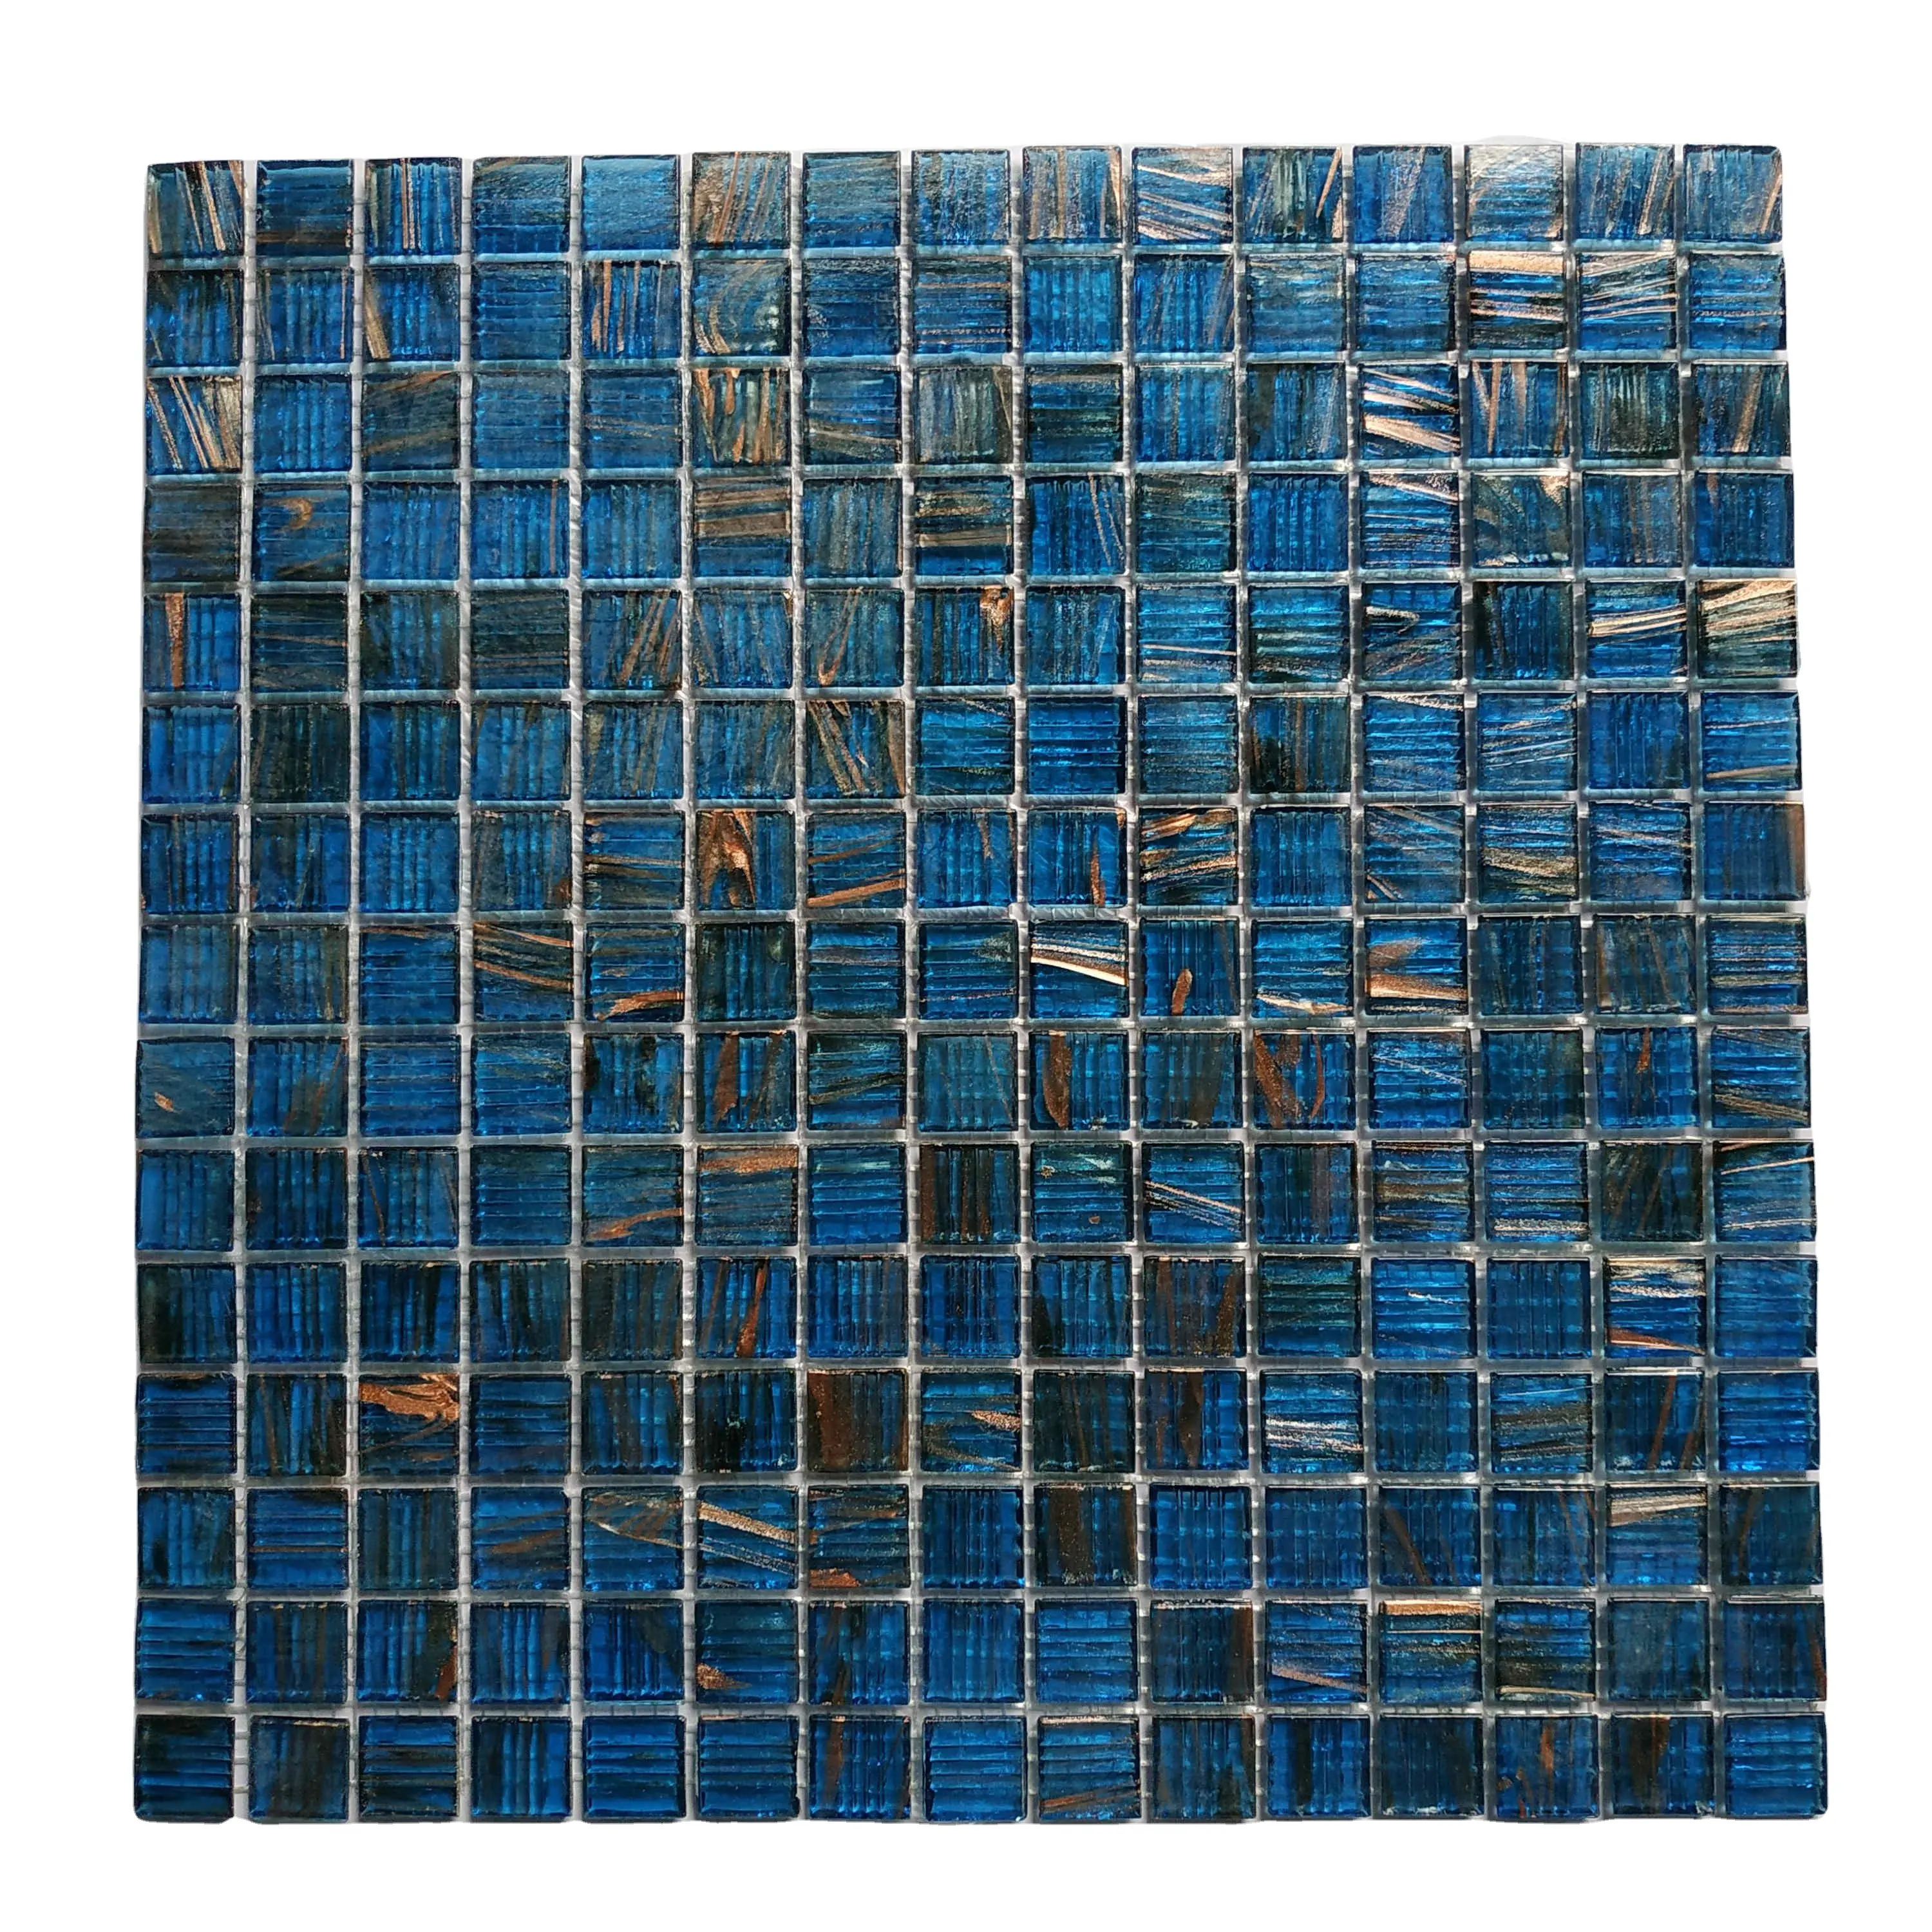 Mattonelle di mosaico di vetro blu iridescente all'ingrosso nuove innovazioni in piscina mattonelle del muro del pavimento del bagno